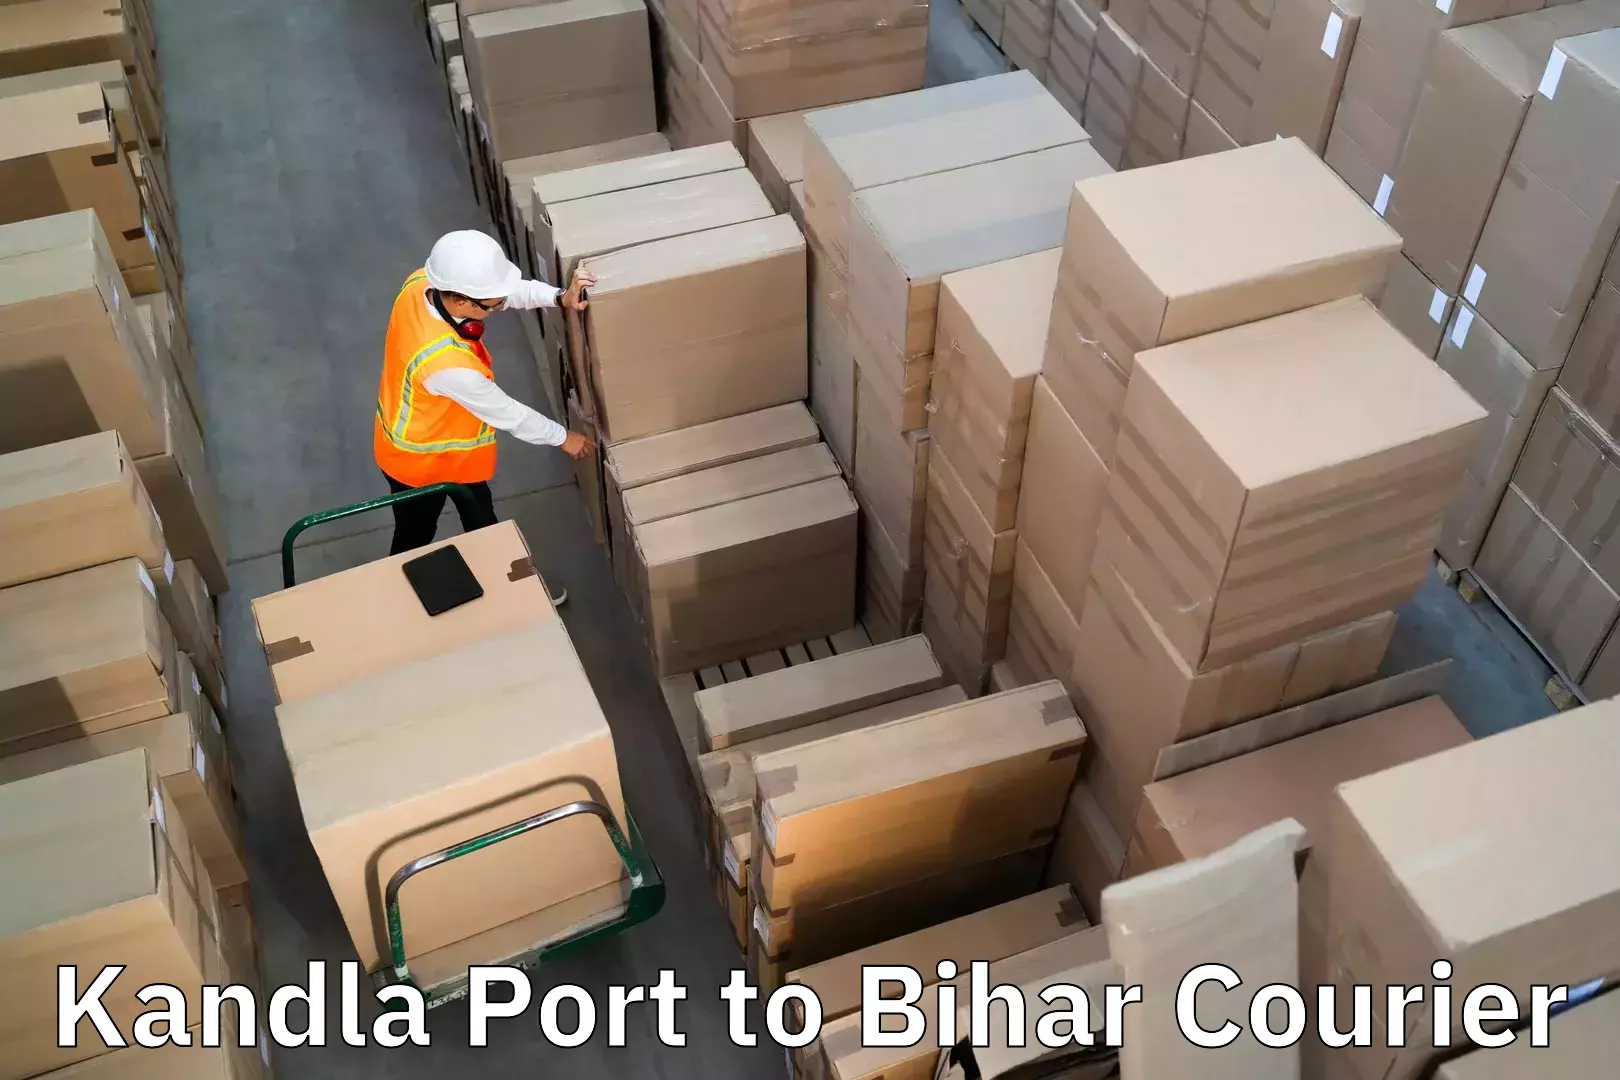 Baggage delivery management in Kandla Port to Gopalganj